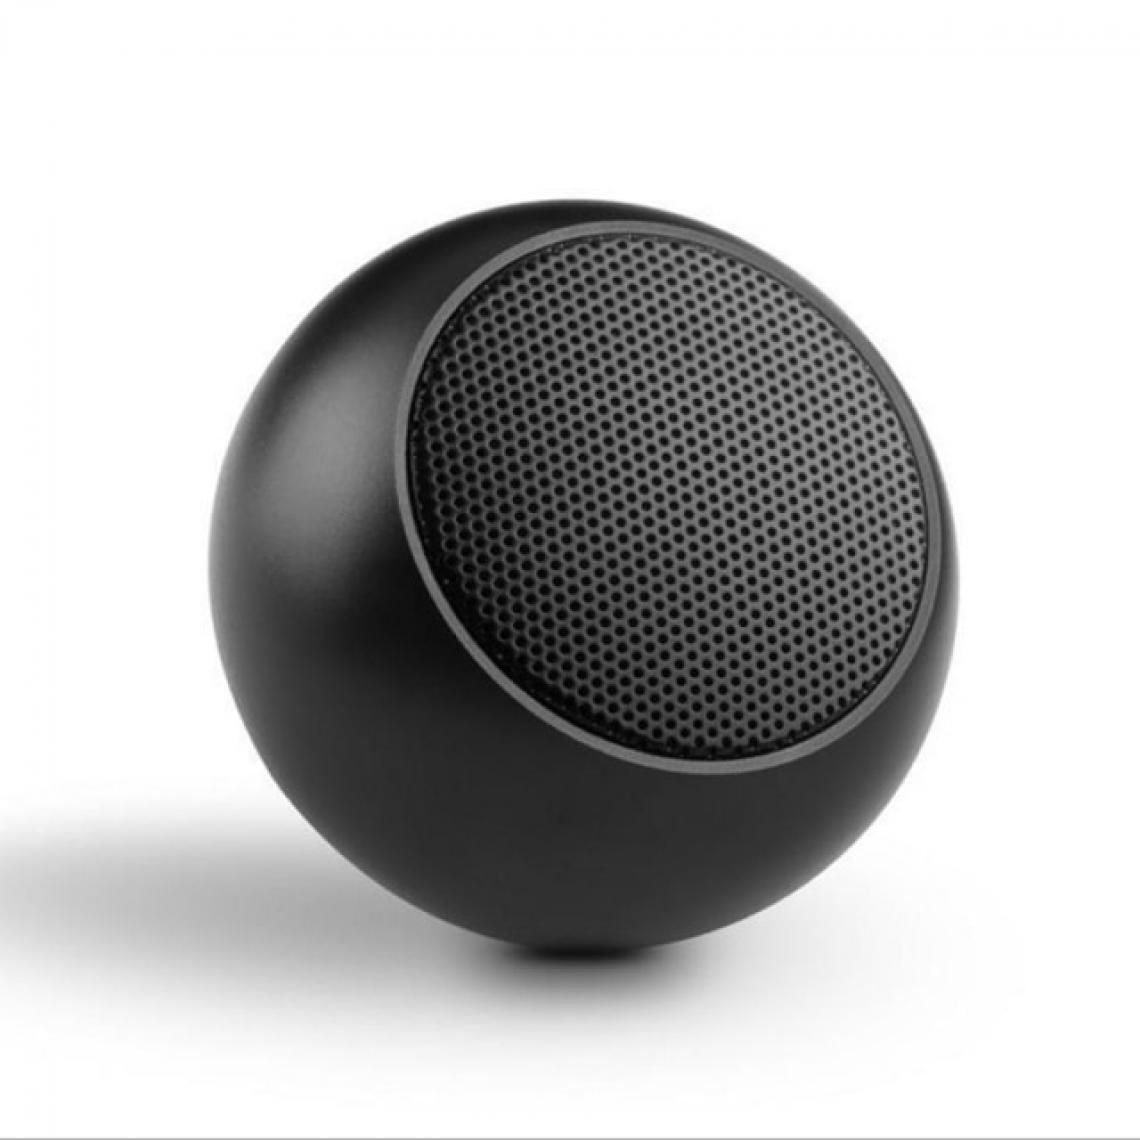 Universal - Mini haut-parleur Bluetooth portable sans fil noir haut-parleur stéréo métallique avec microphone subwoofer lecteur de musique MP3 pour téléphone mobile | - Hauts-parleurs